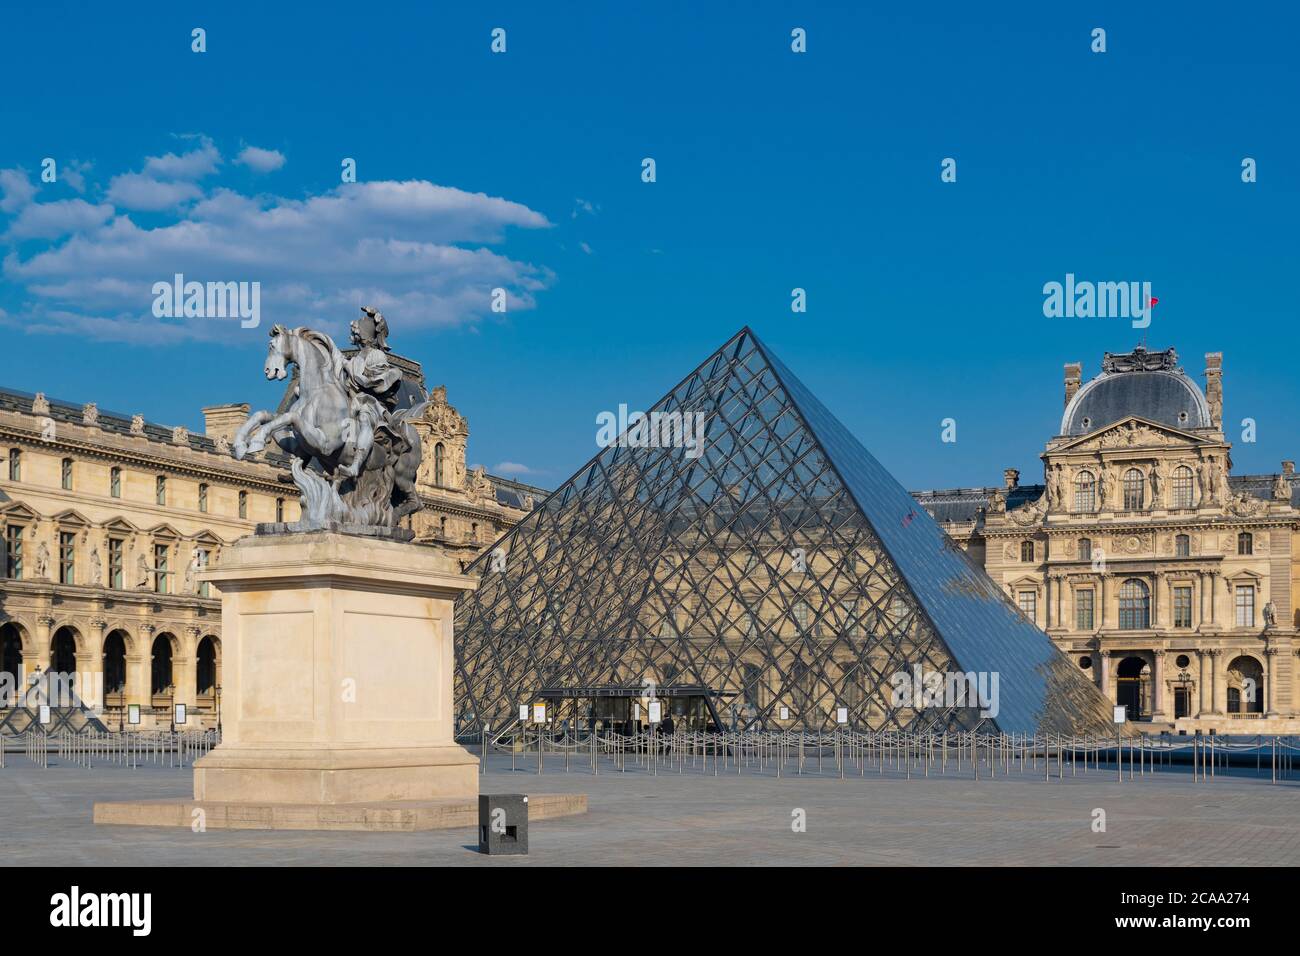 El Museo del Louvre es el museo de arte más grande del mundo y un monumento histórico de París. Foto de stock